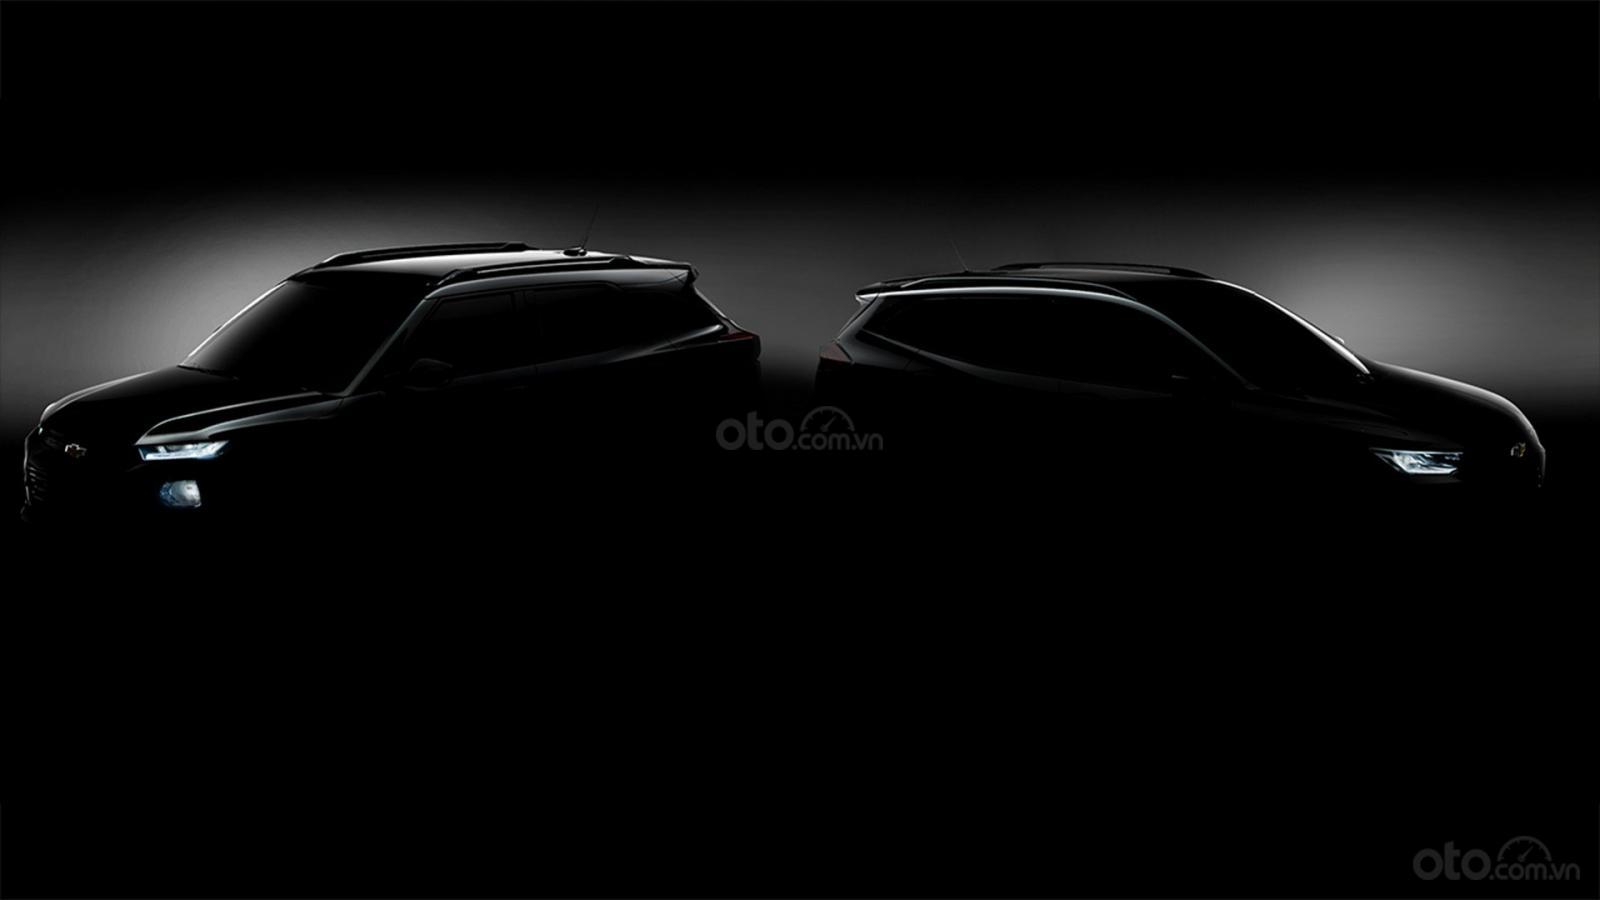 Chevrolet Trailblazer 2020 cùng Chevrolet Tracker 2020 tung ảnh nhá hàng